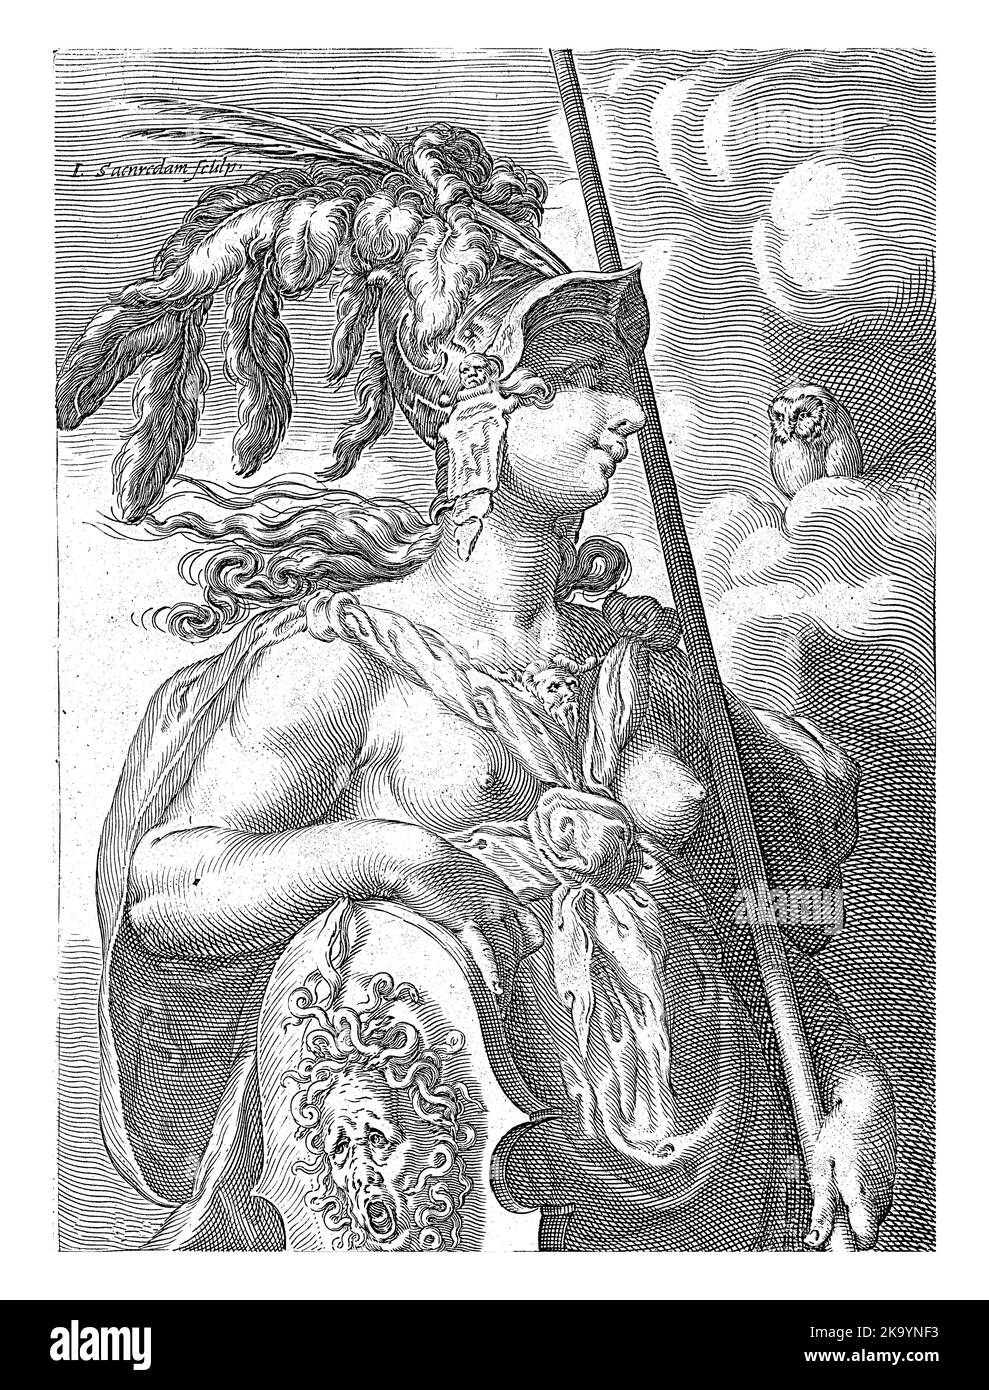 Minerva, avec un casque, une lance et le bouclier de Medusa. Elle regarde un hibou dans les nuages. Banque D'Images